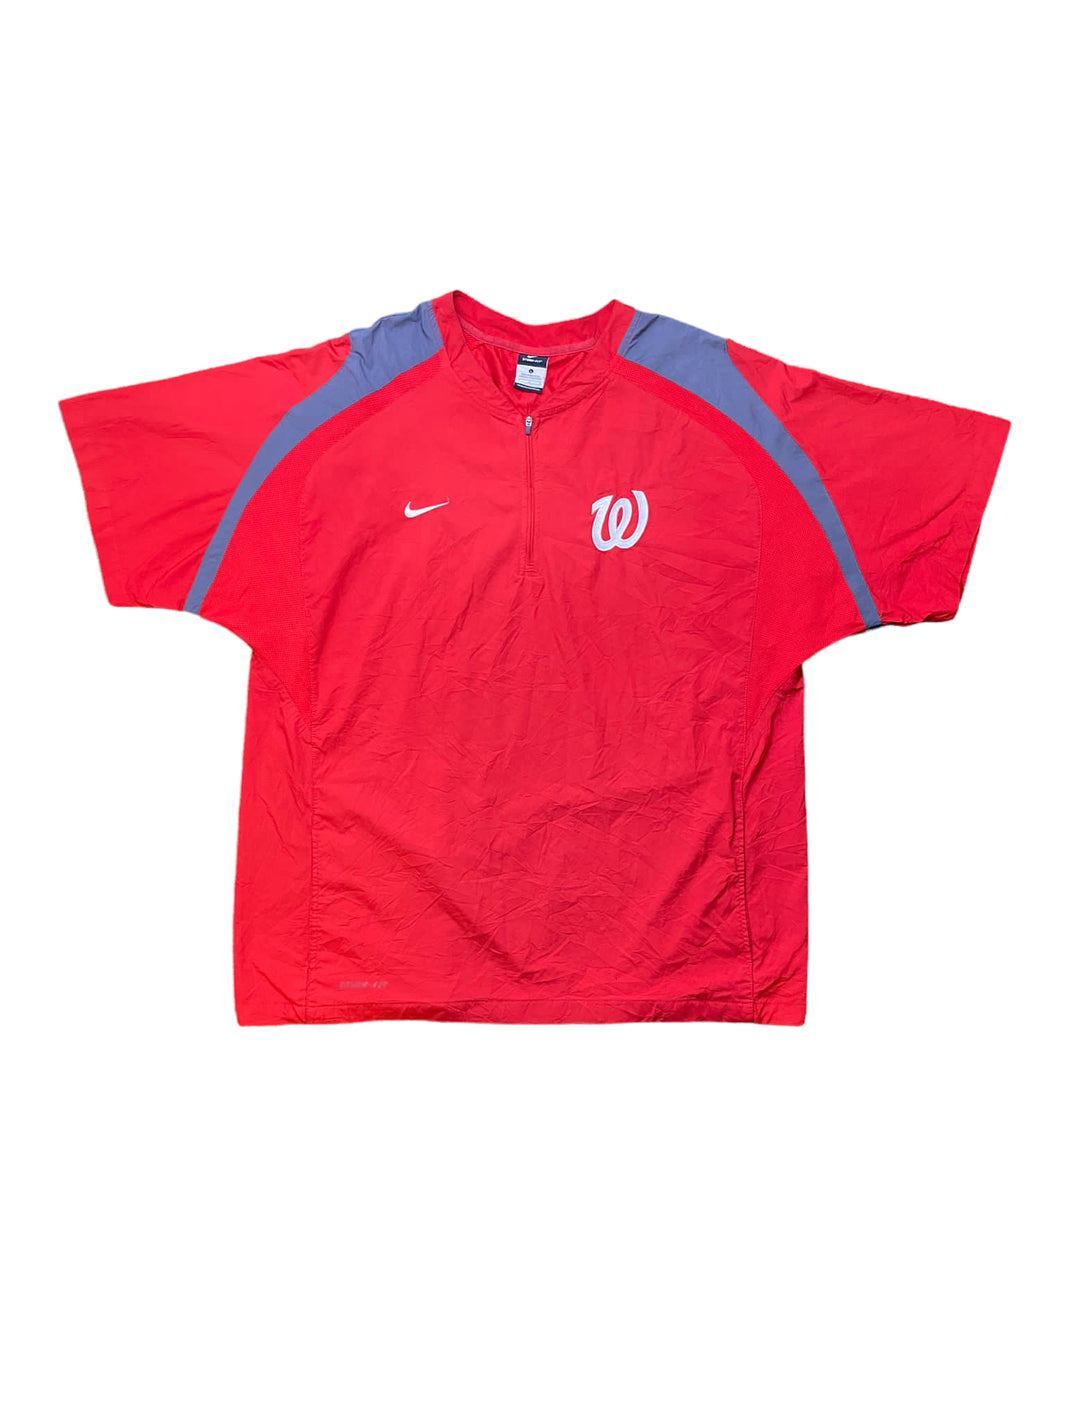 Nike Wisconsin Shirt